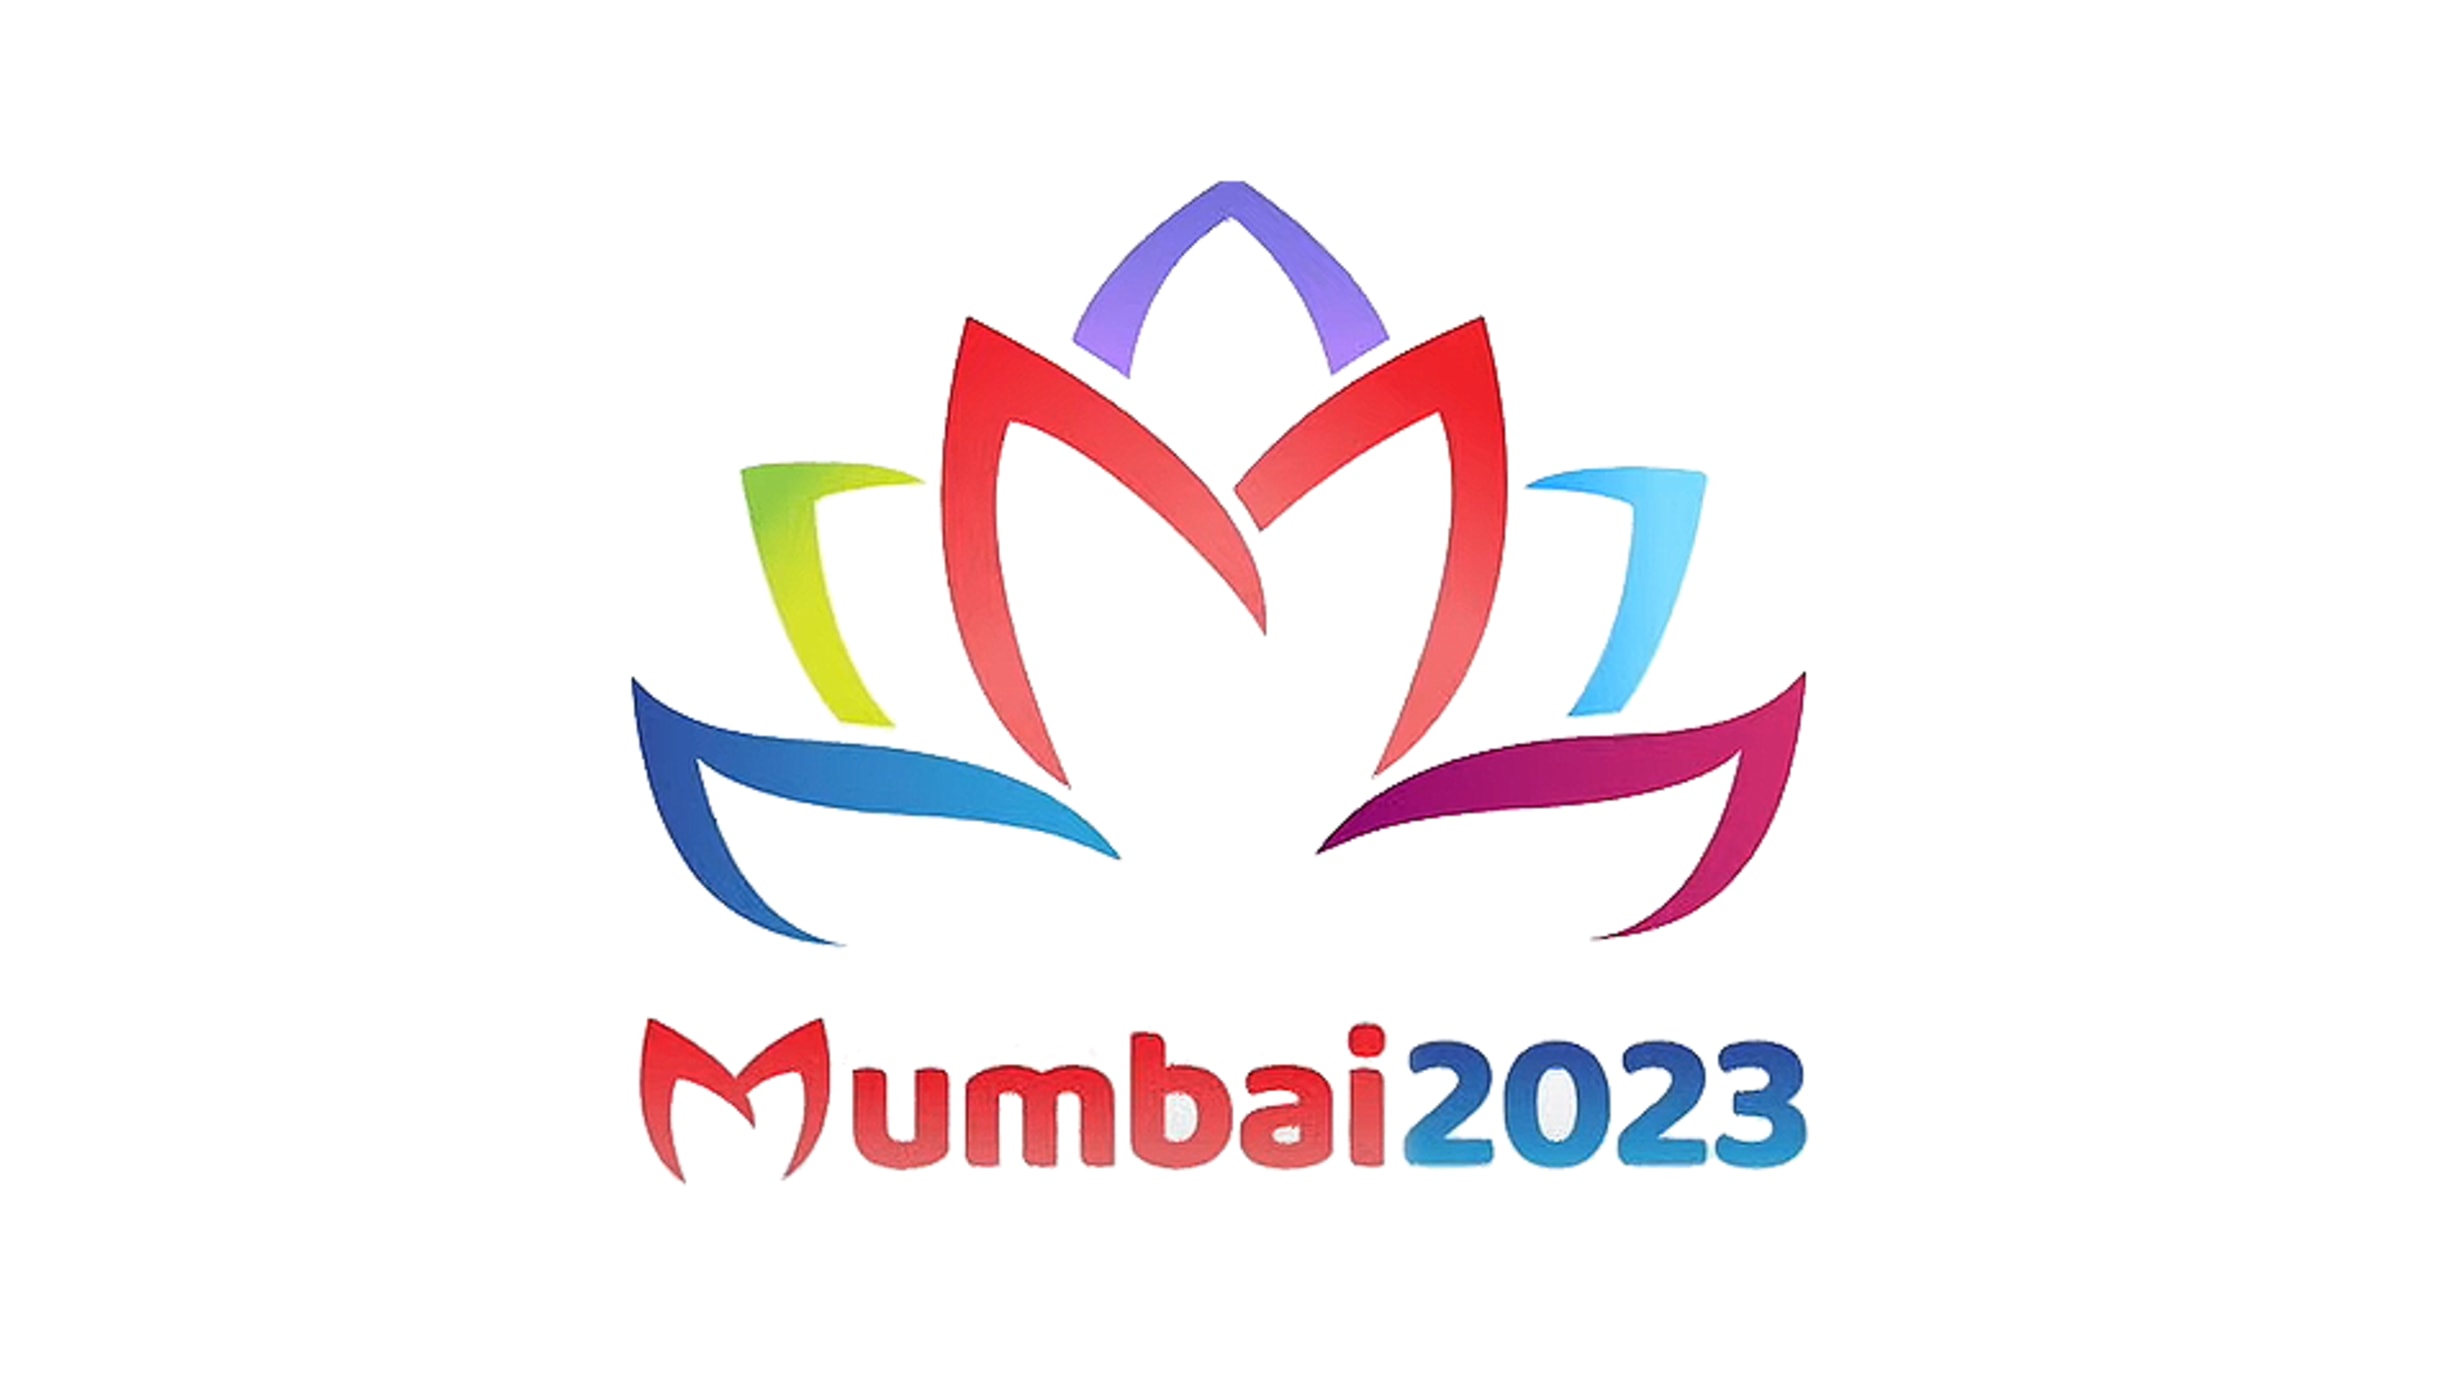 mumbai new year party 2022 clipart